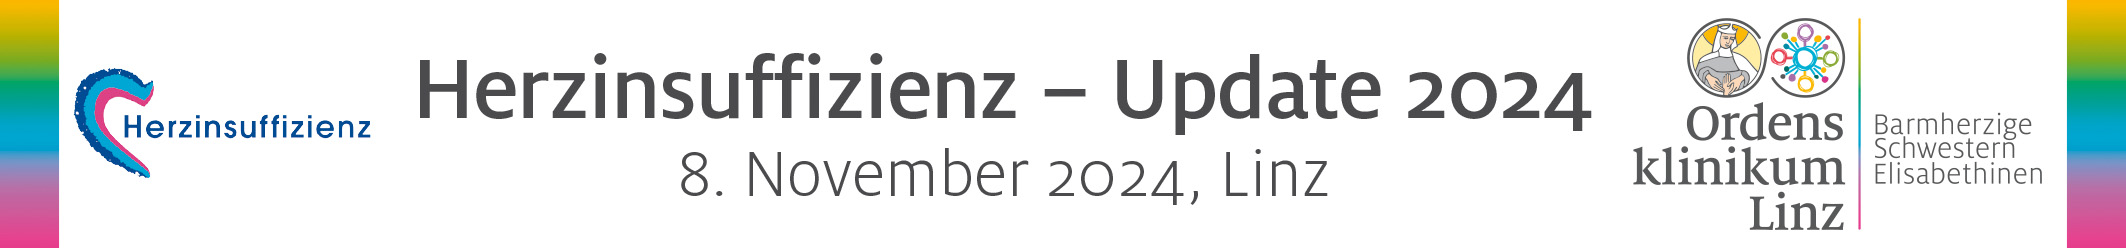 Herzinsuffizienz – Update 2024